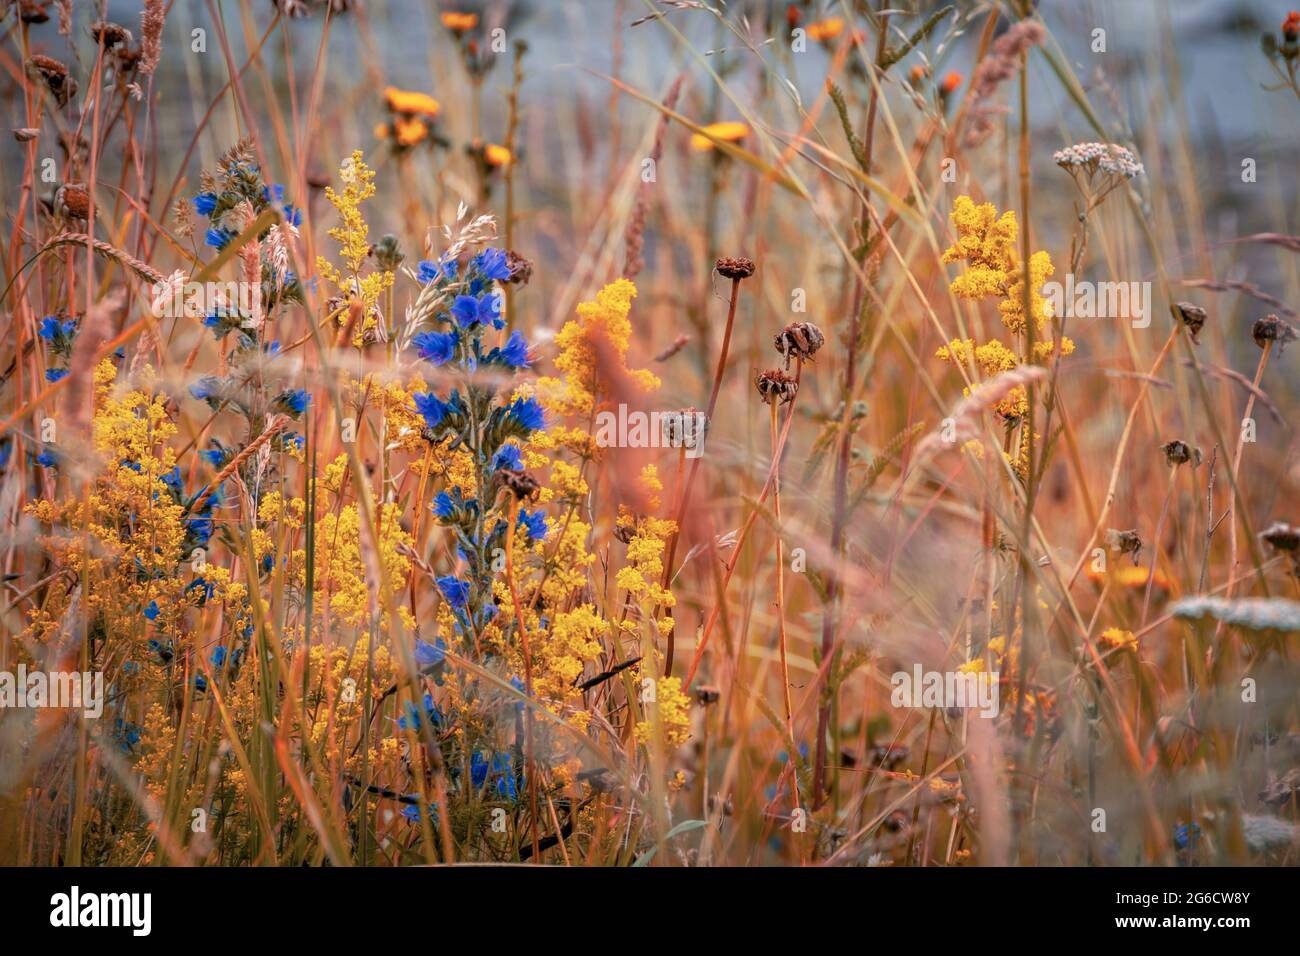 Britische Wiese im Sommer mit wilden Blumen und Gräsern, Viper's Bugloss, Stockfoto